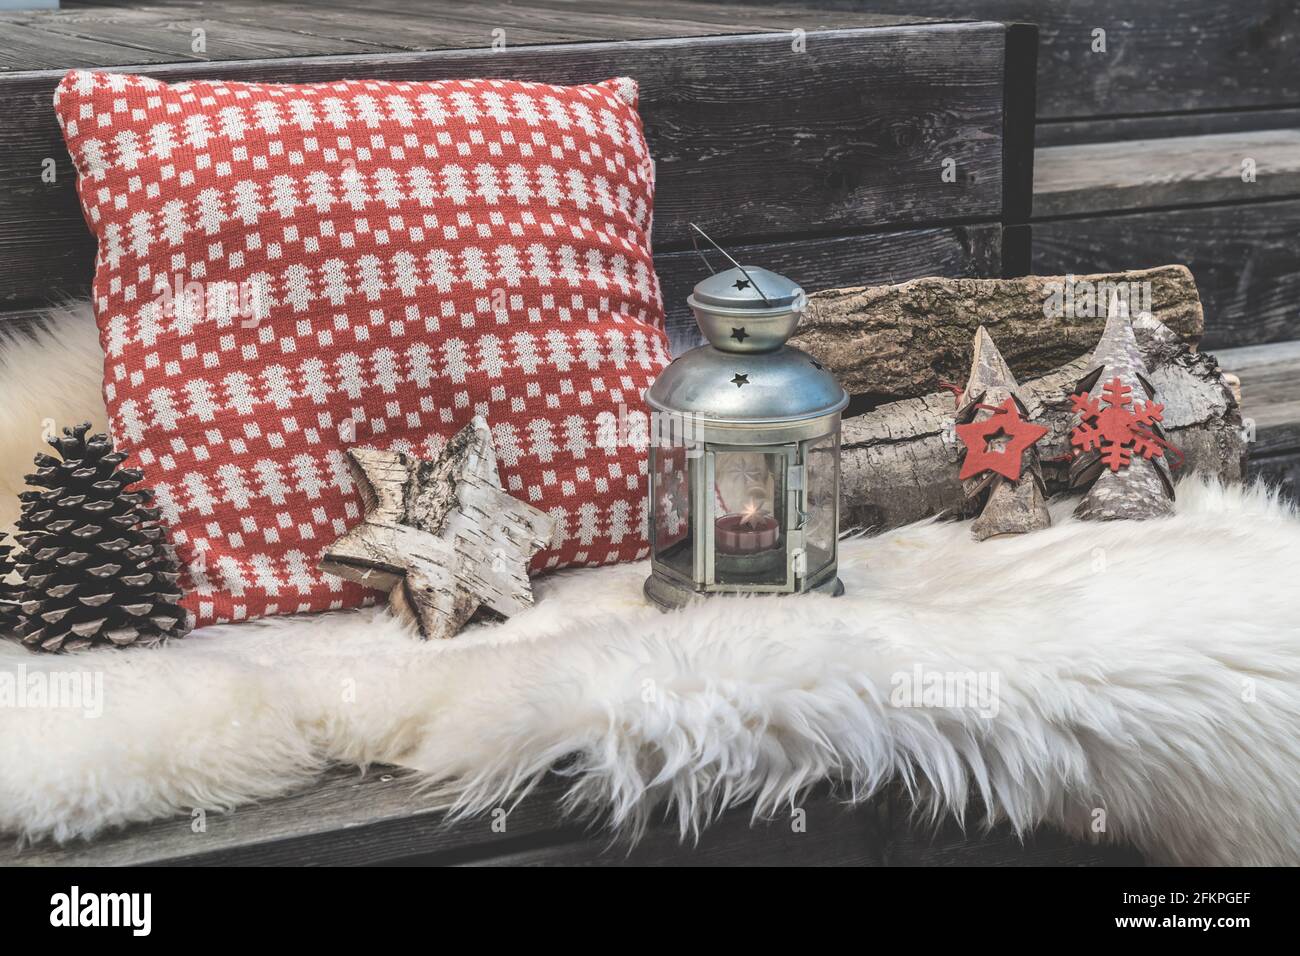 Veranda in legno con pelle di agnello, cuscini natalizi rossi e bianchi, lanterna e legna da ardere Foto Stock